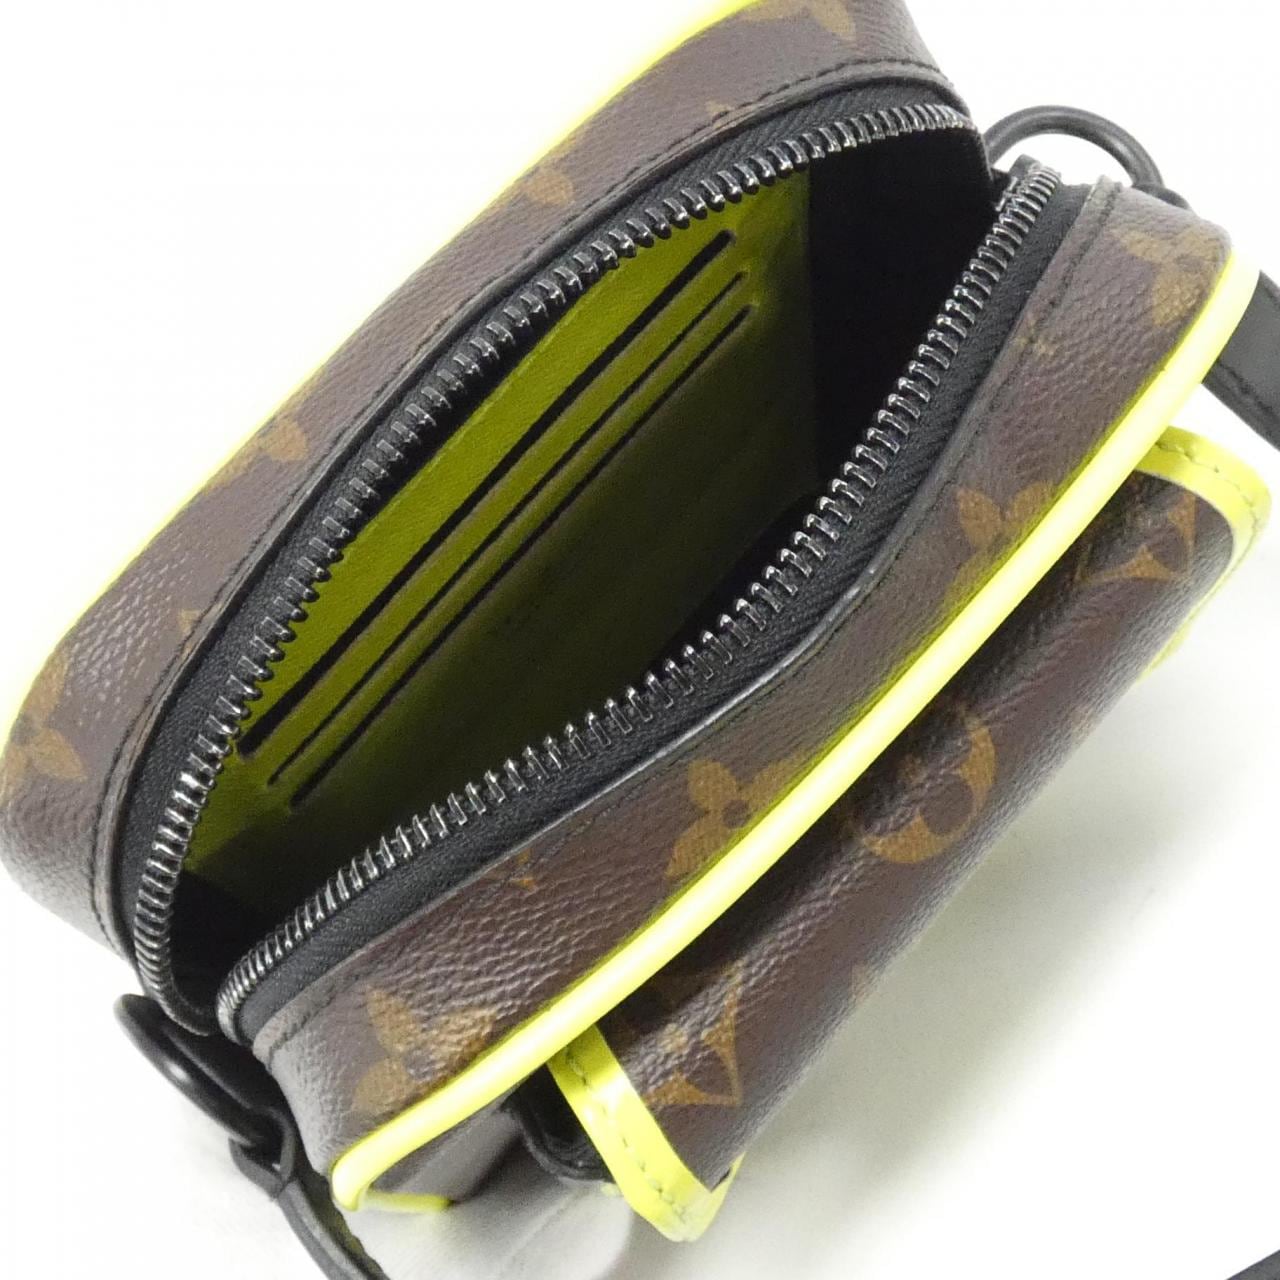 LOUIS VUITTON Monogram Christopher Wearable Wallet M80793 Shoulder Bag